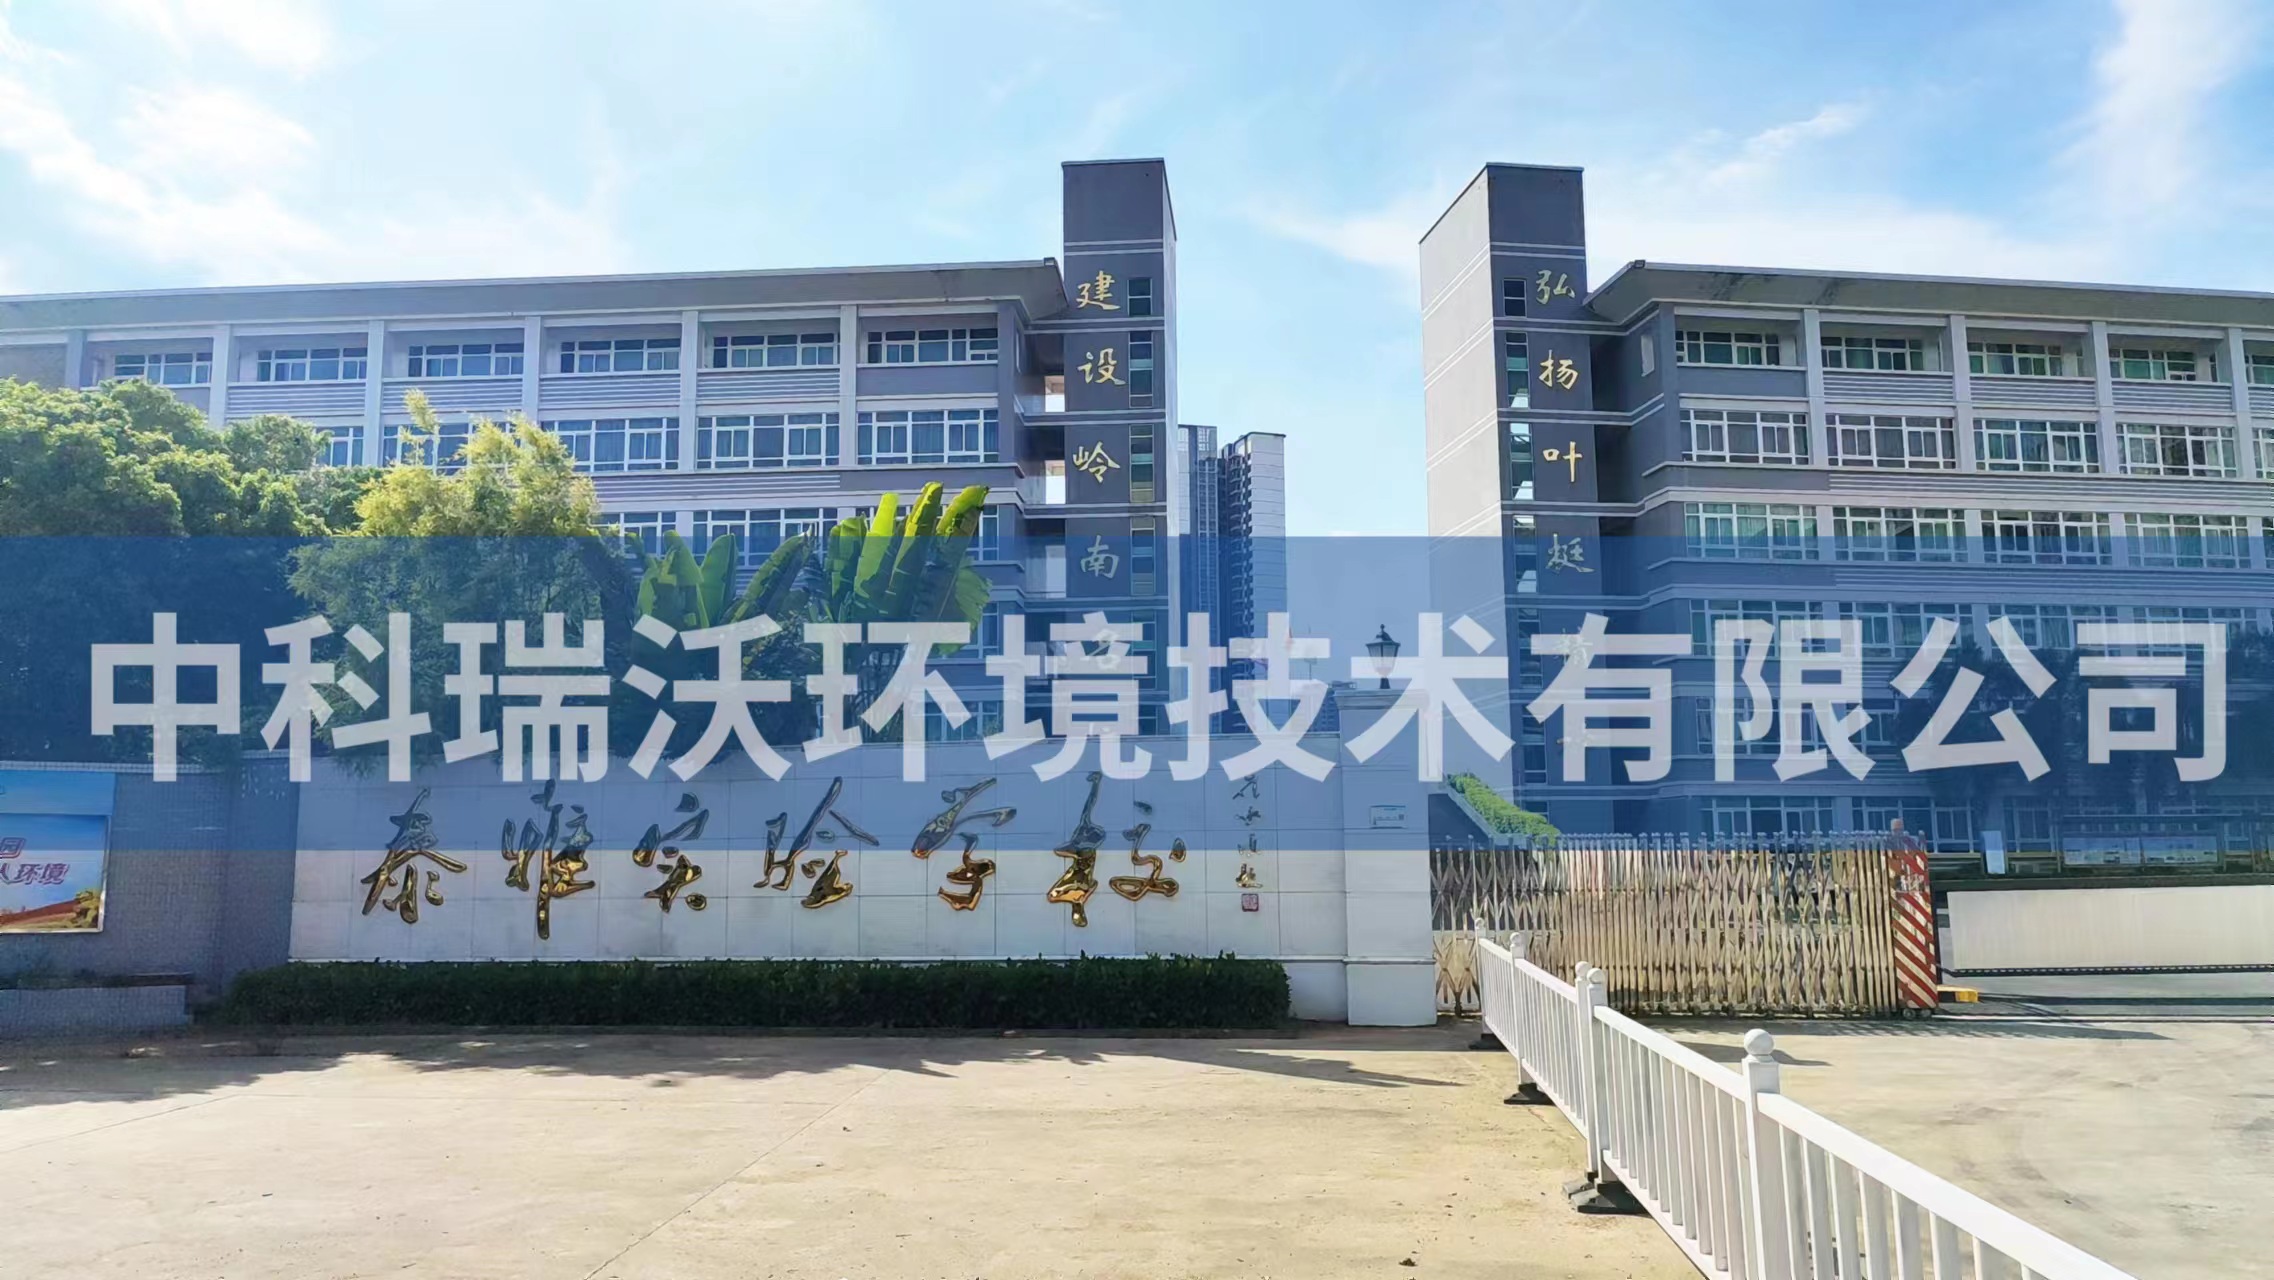 廣東省惠州市惠陽區泰雅實驗學校實驗室污水處理設備安裝調試完成